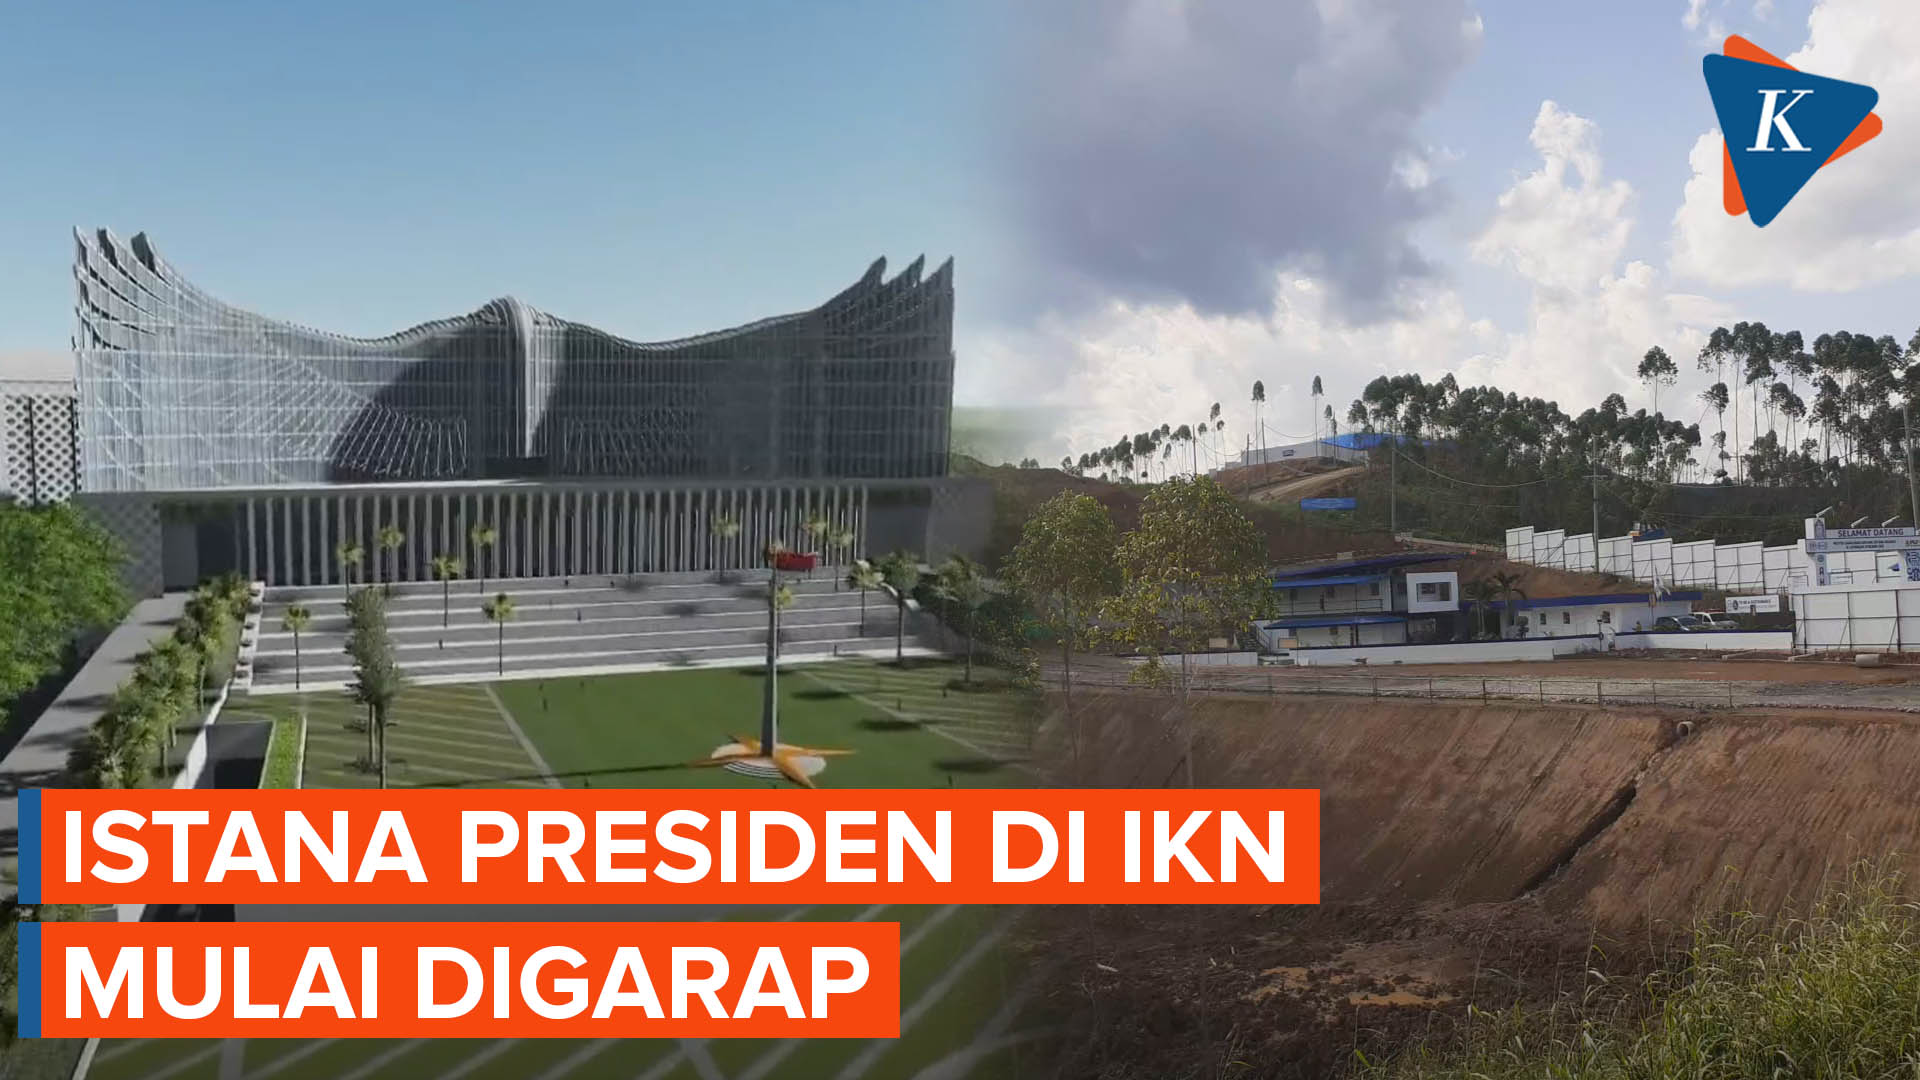 Konstruksi Kawasan Istana Presiden di IKN Mulai Digarap Akhir Januari 2023